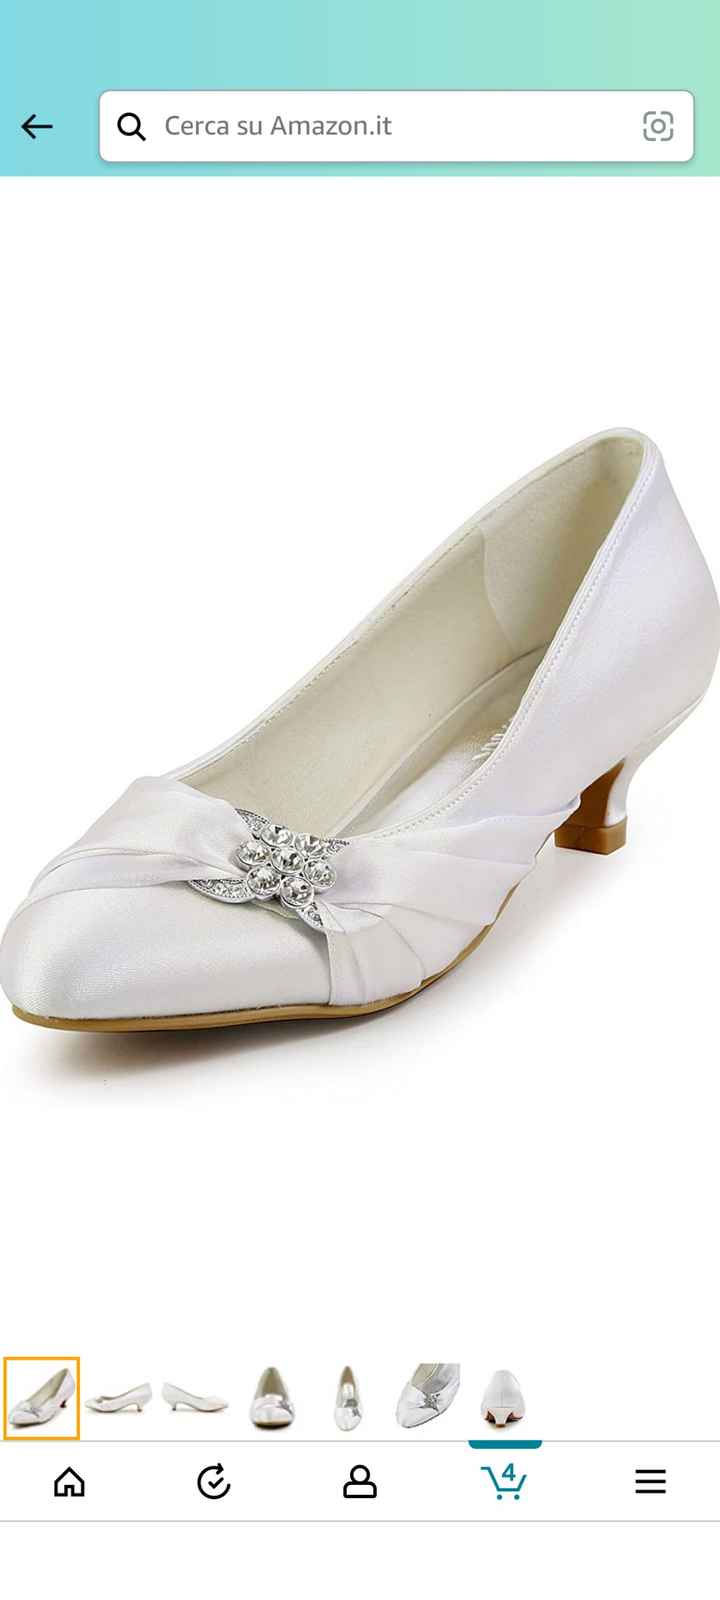 Quale scarpe preferite sotto l’abito da sposa? - 1